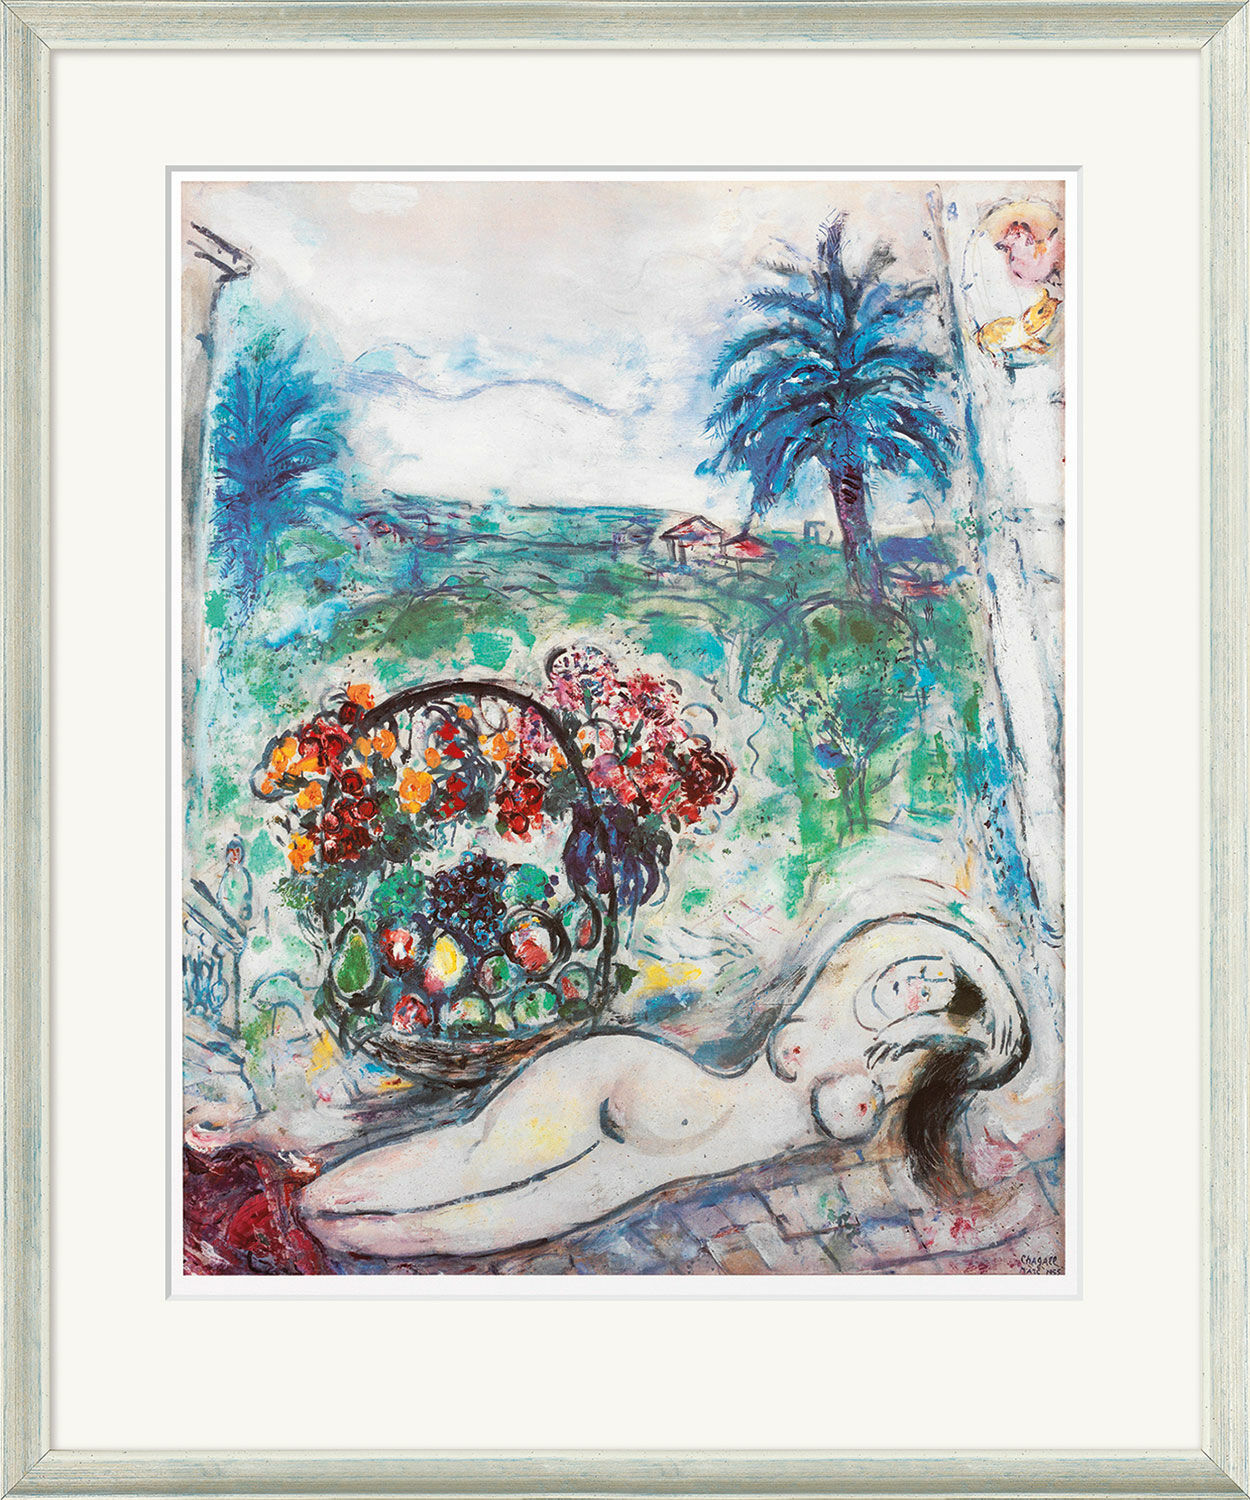 Beeld "Naakt met bloemenmand" (1955), ingelijst von Marc Chagall